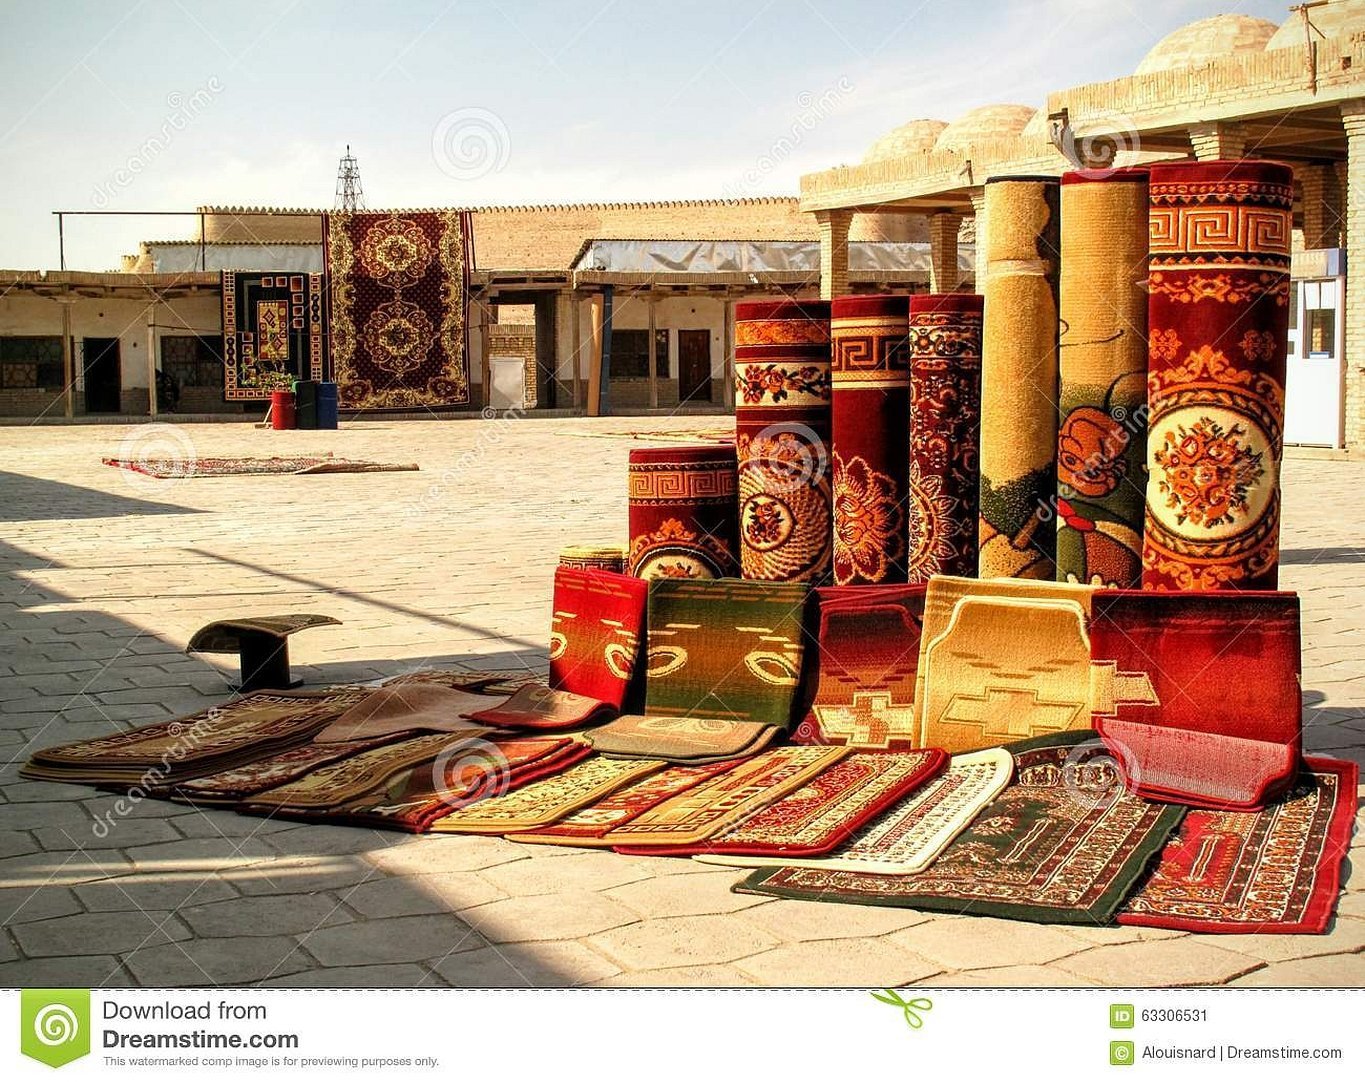 Узбекский ковровый рынок